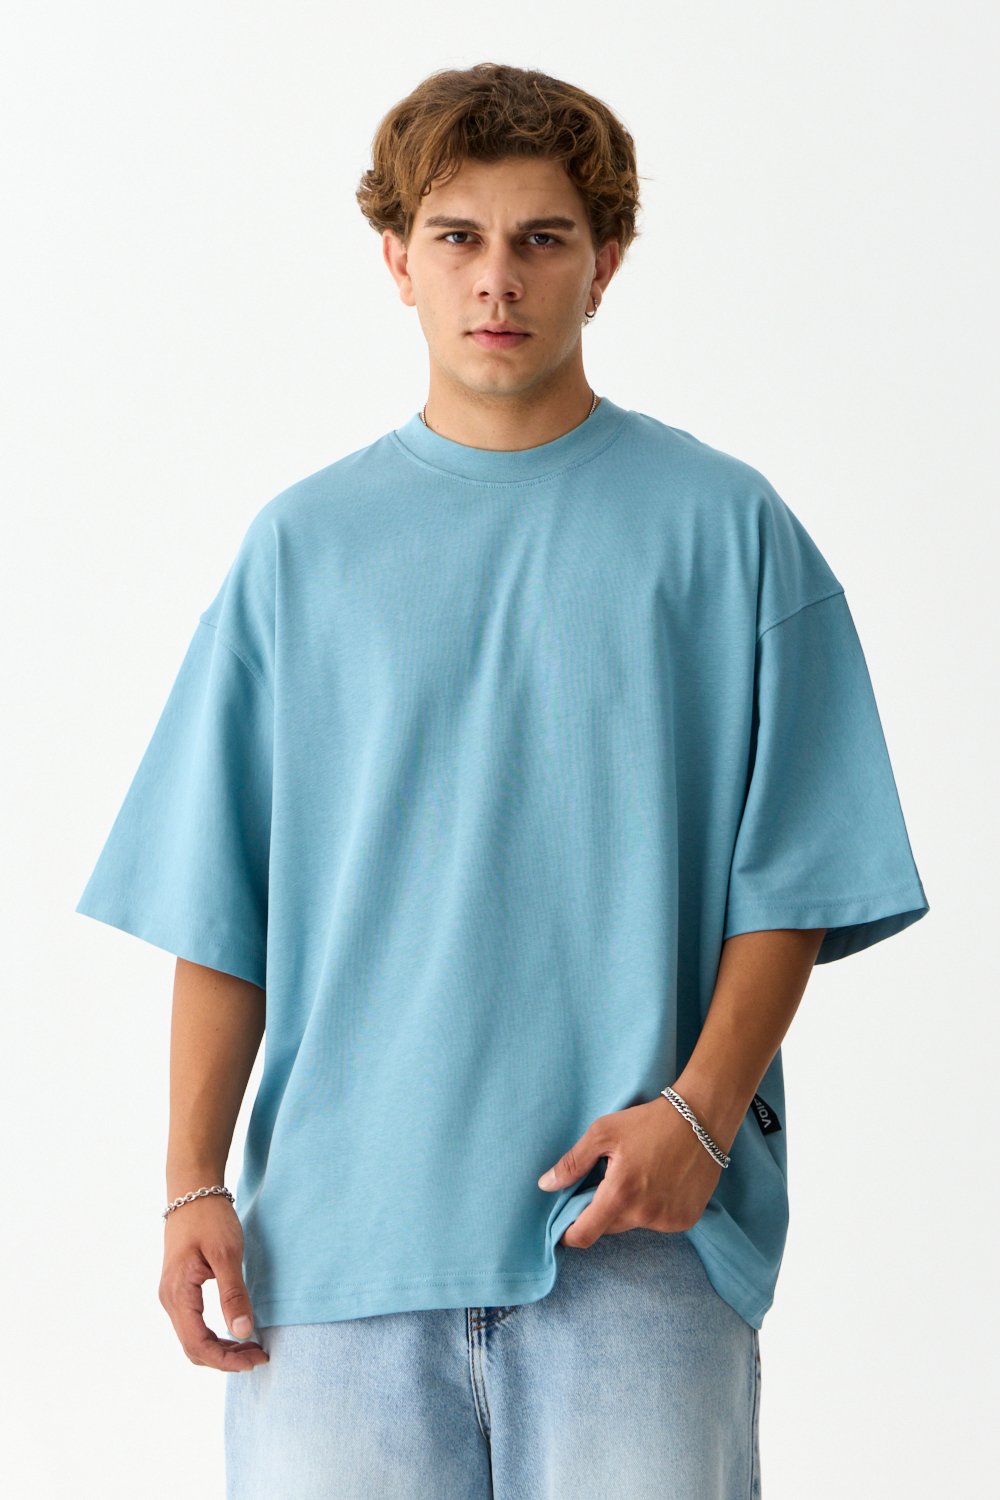 VOID Premium Oversize Basic Tişört - Bebek Mavisi